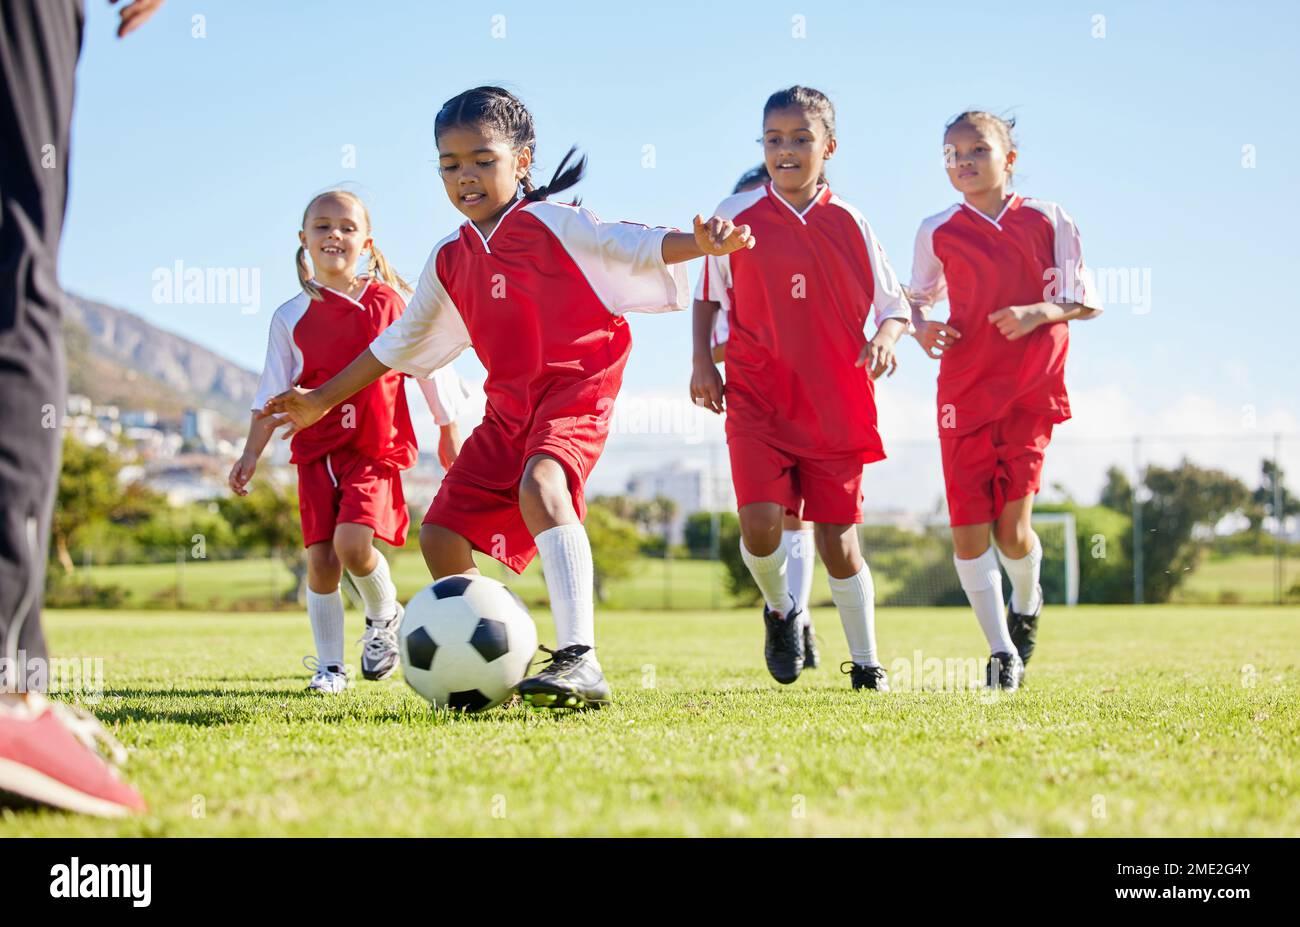 Le football, le ballon ou le sport et une équipe de filles s'entraînent ou jouent ensemble sur un terrain d'entraînement. Fitness, football et herbe avec les enfants en train de courir ou Banque D'Images